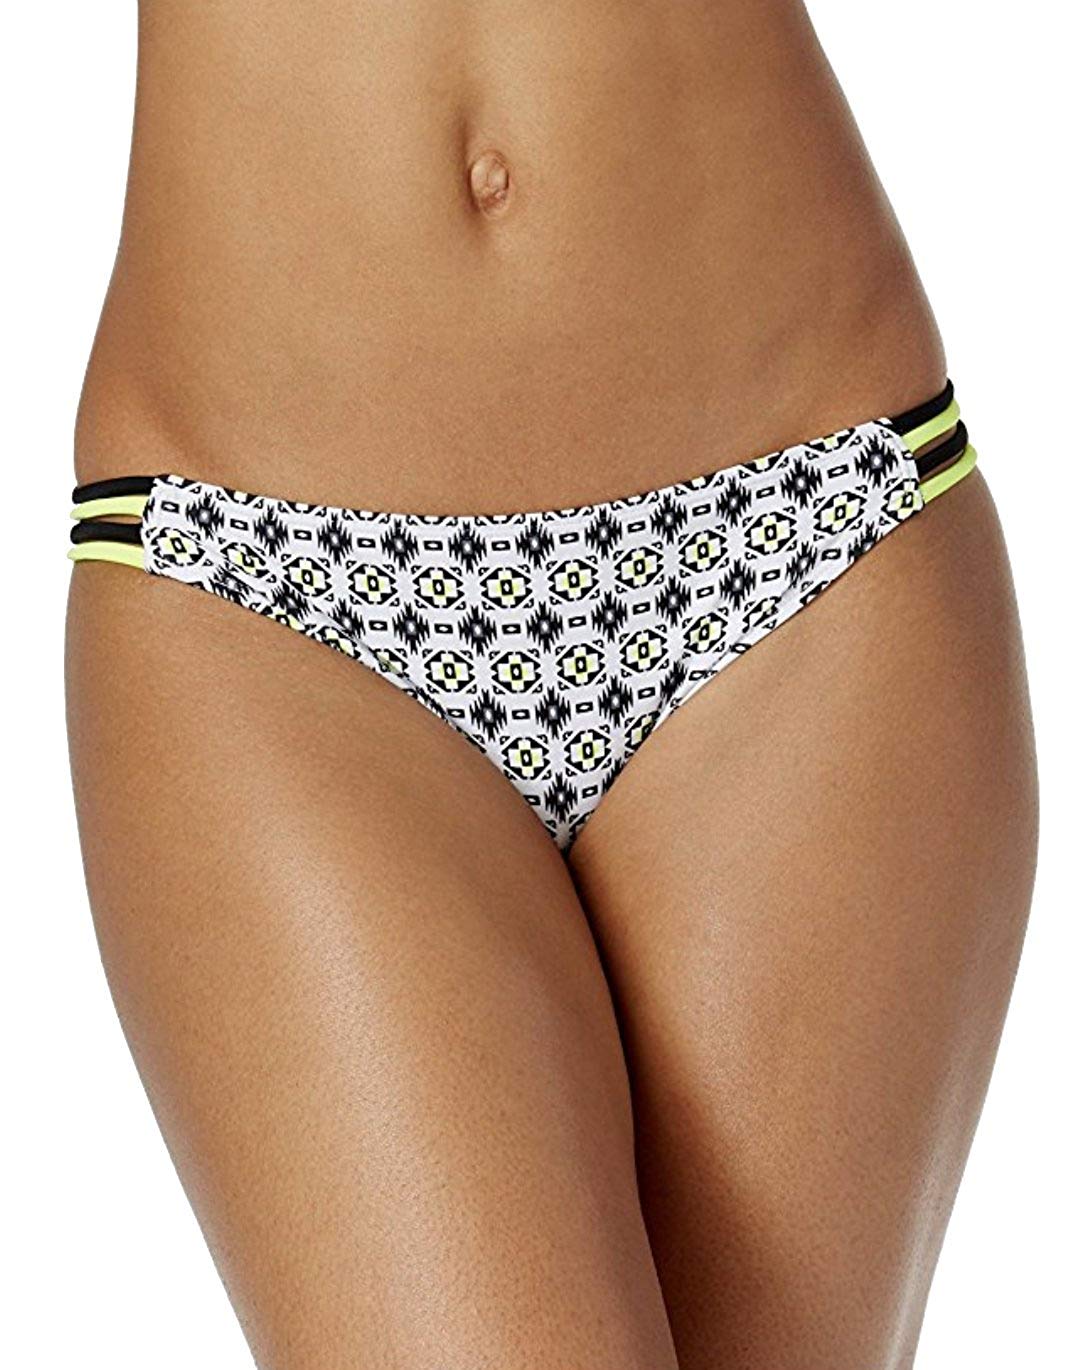 Hula Honey Sand Trap Printed Hipster Bikini Bottoms Women's Swimsuit Size M